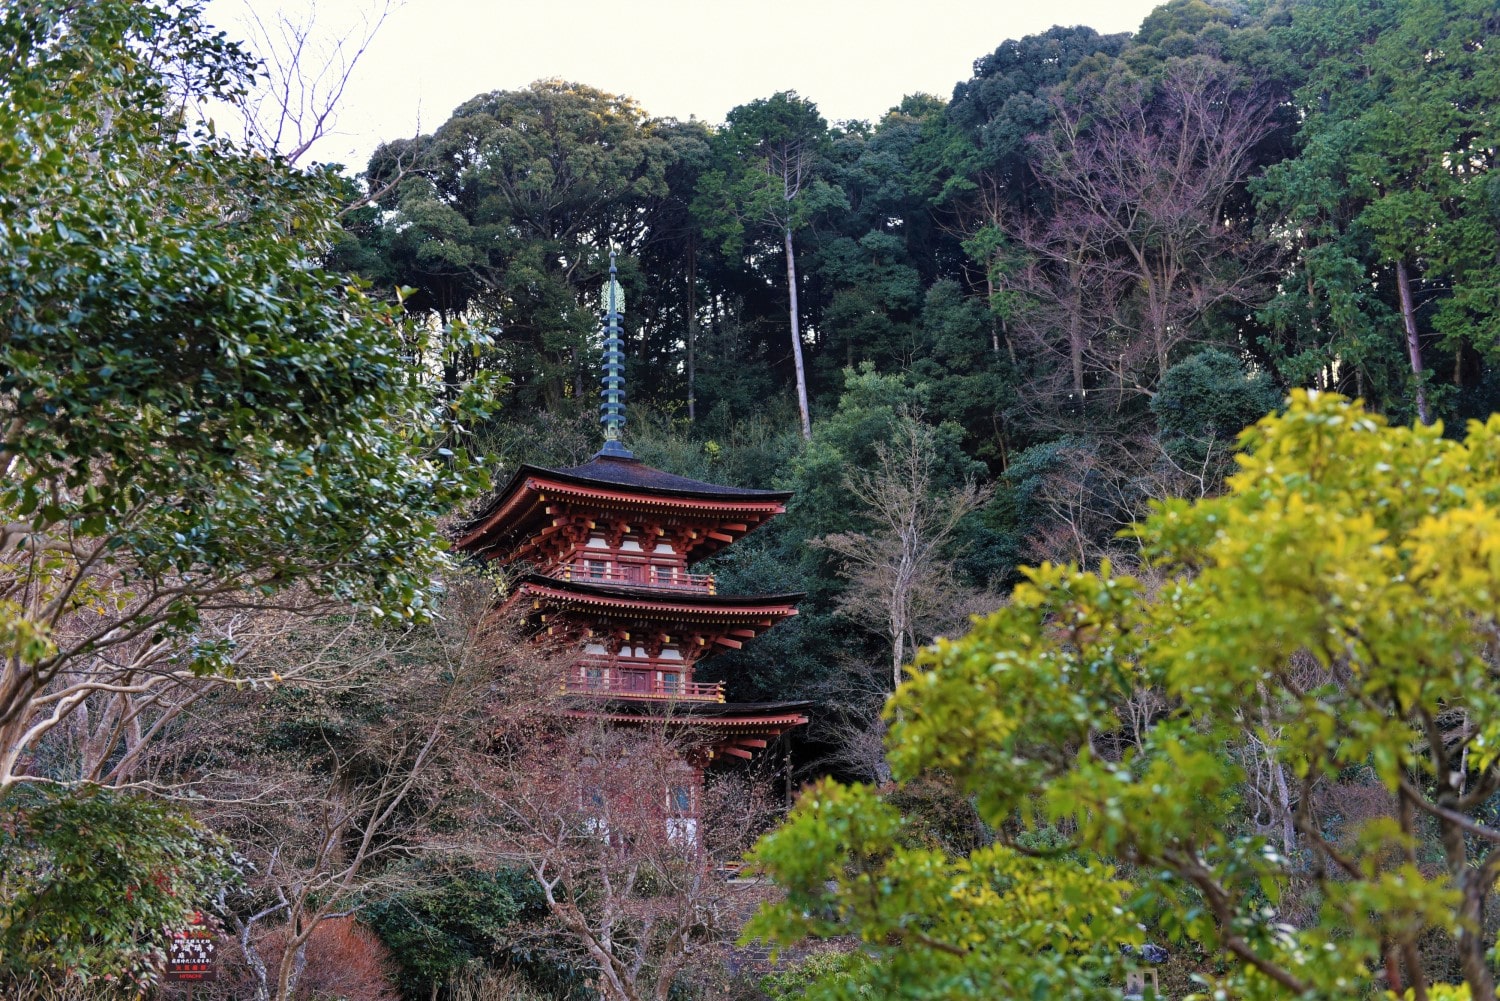 The Three-storied Pagoda